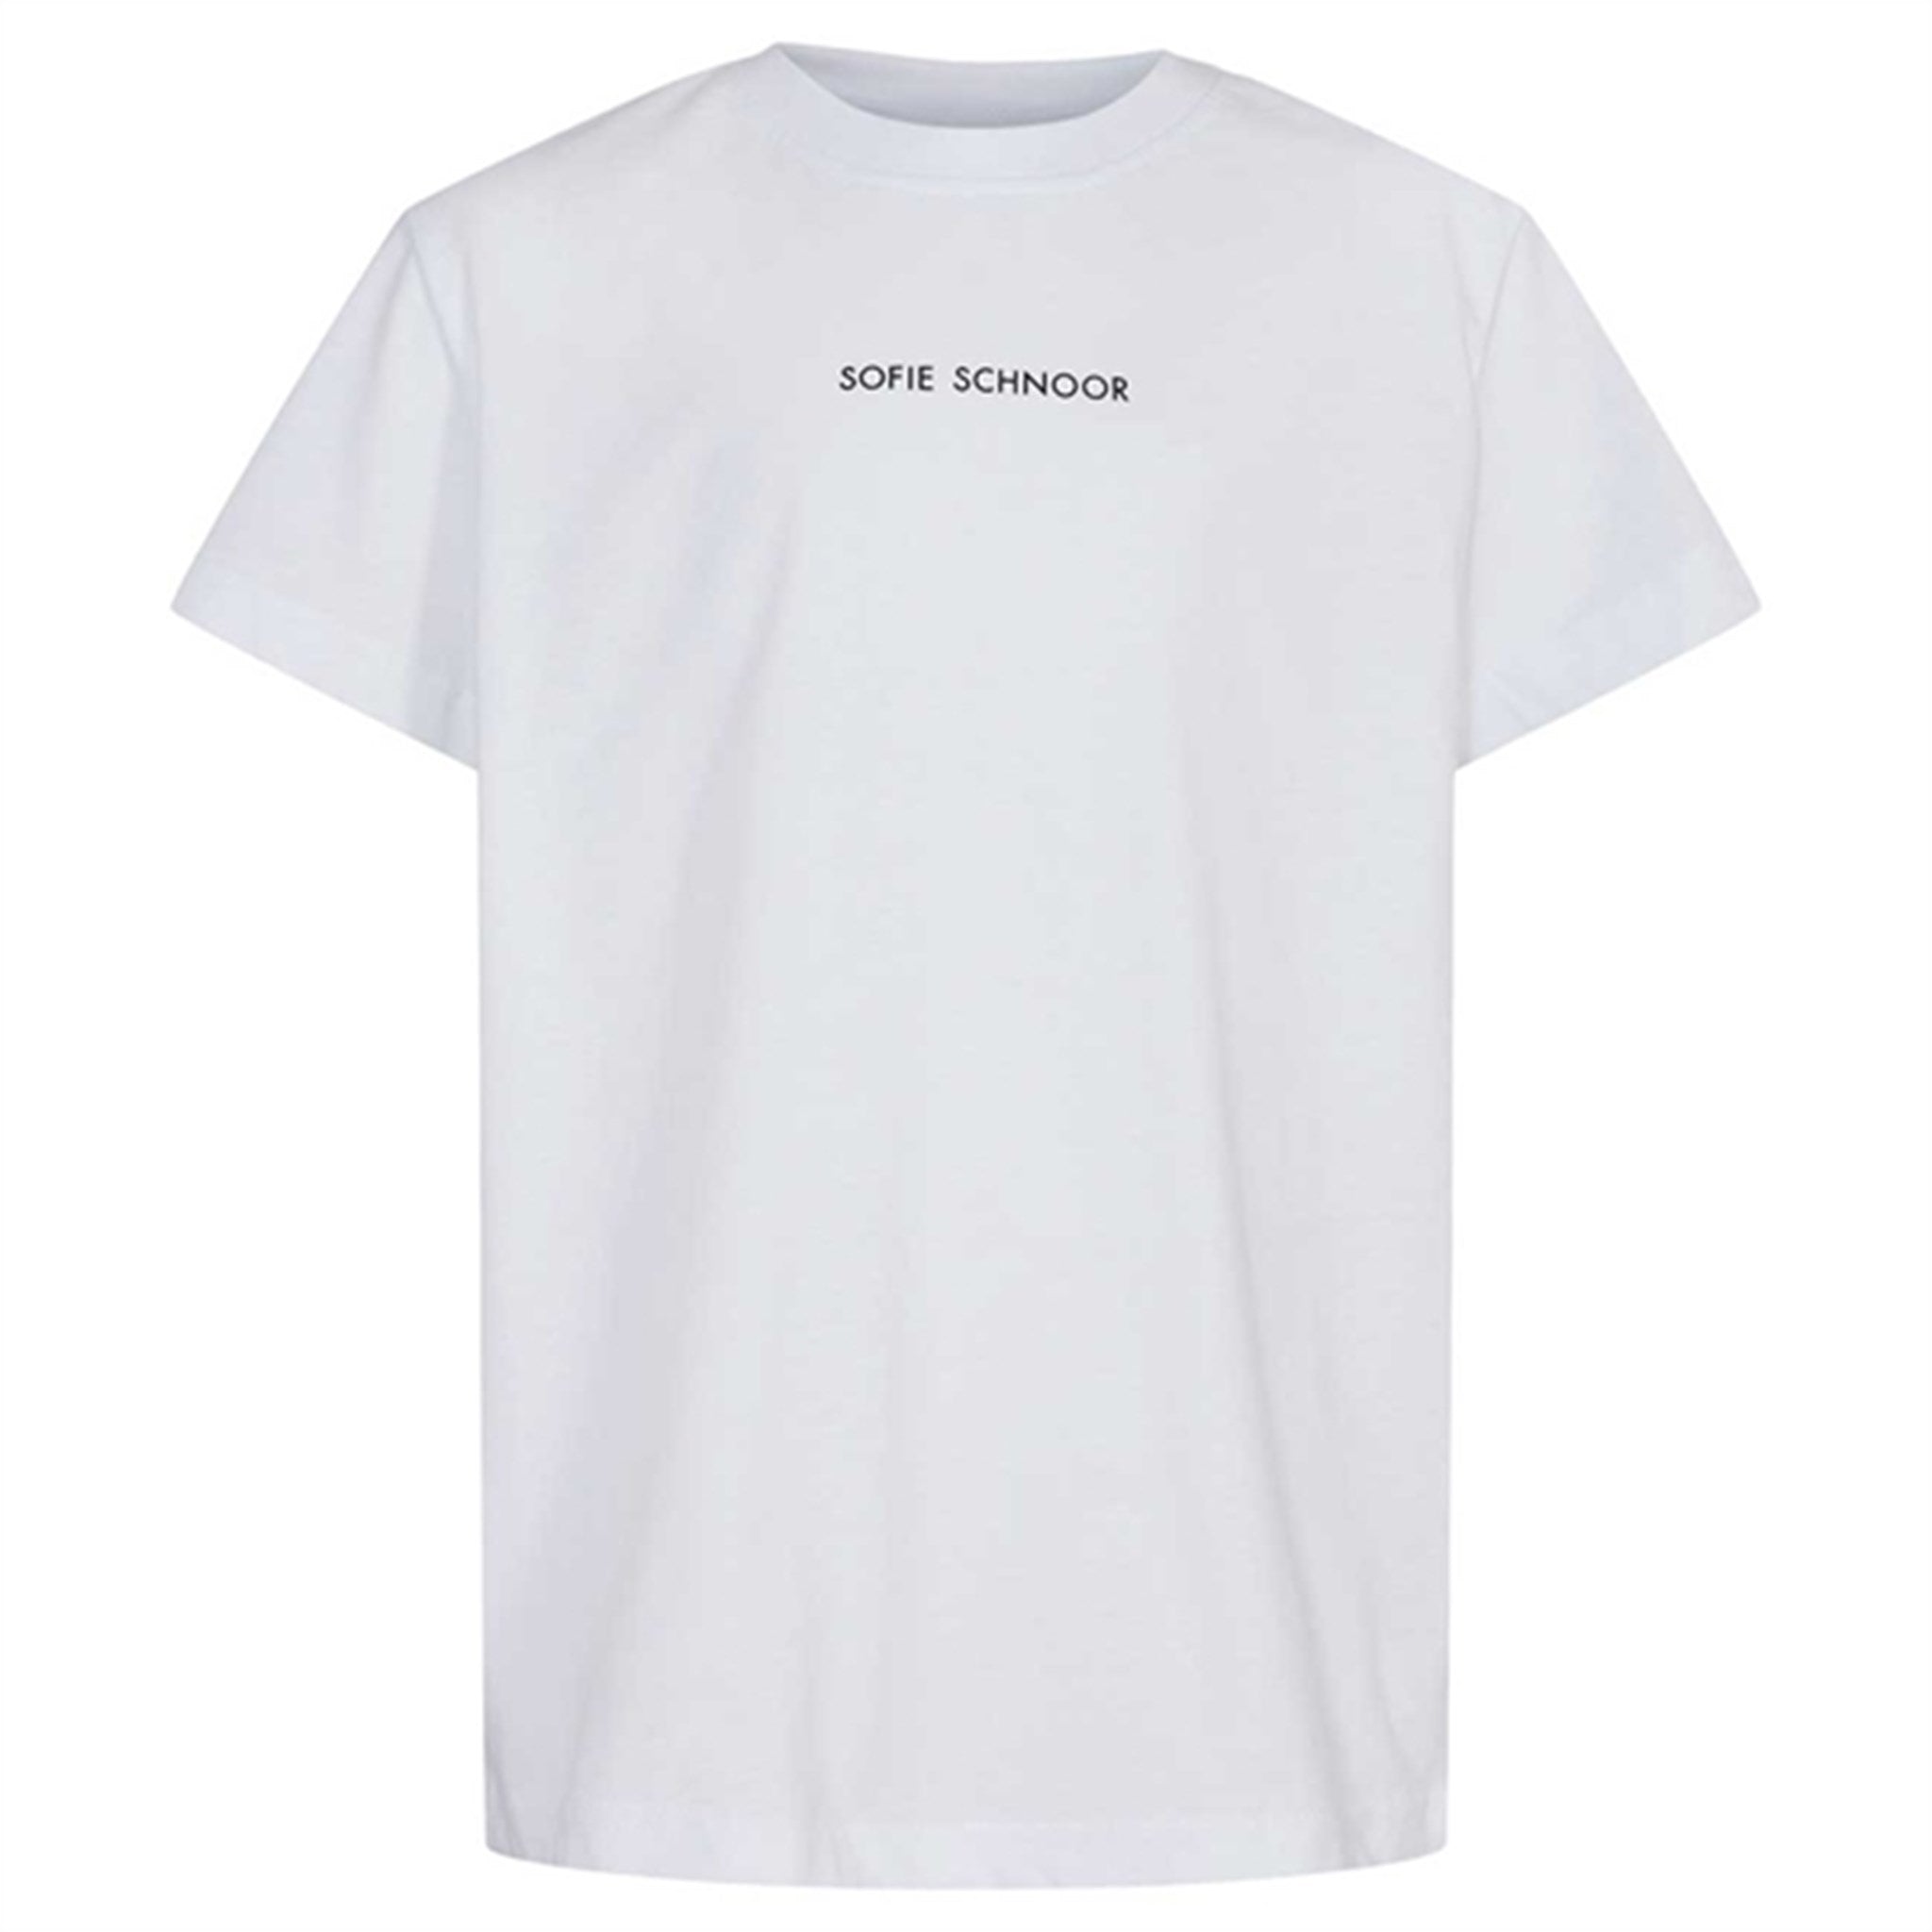 Sofie Schnoor White Noos T-shirt